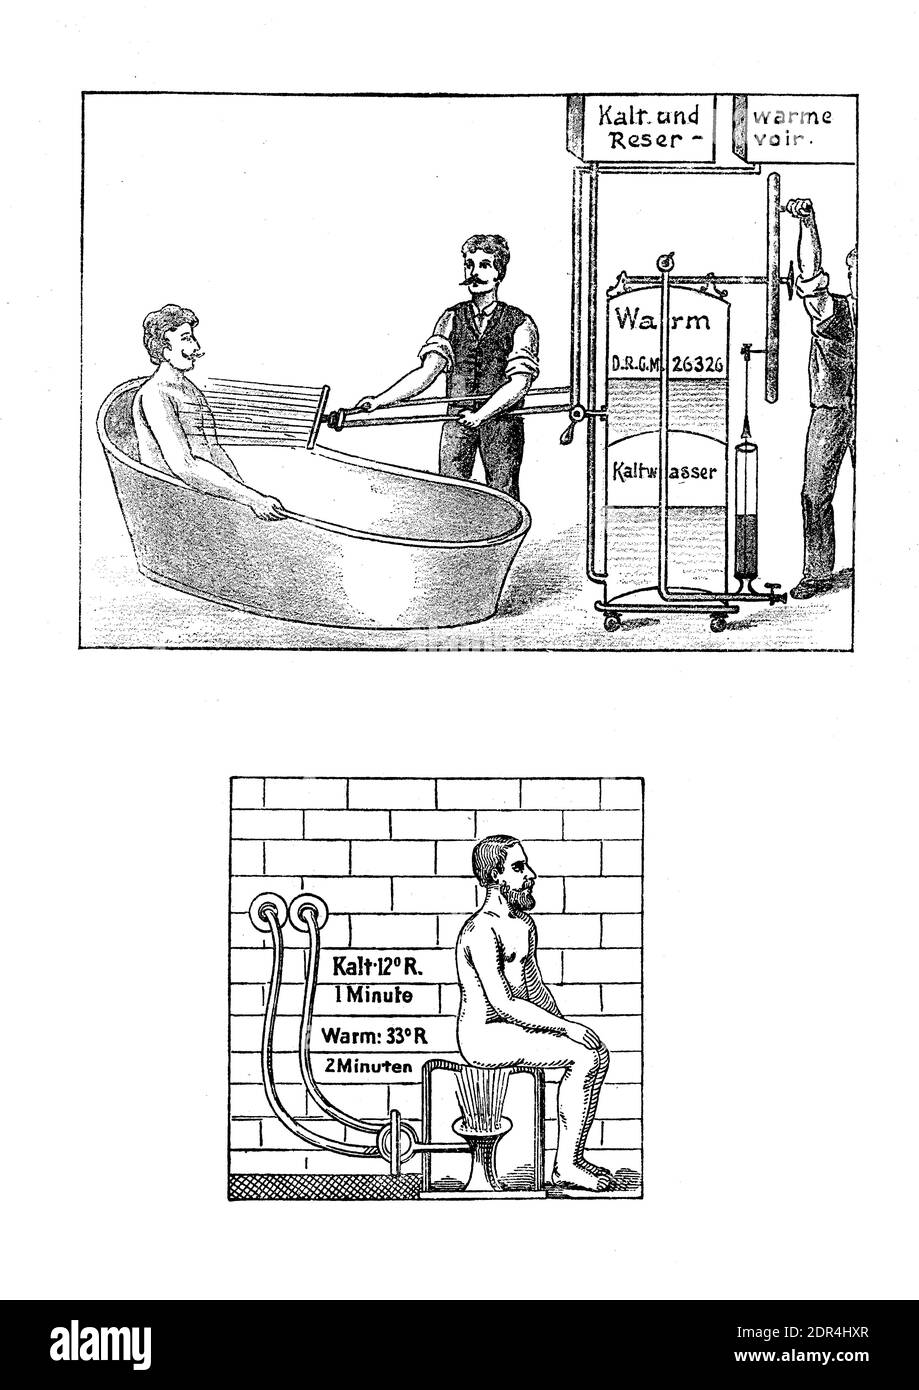 Thérapie de douche de contraste: Homme prenant une douche dans la baignoire et assis, alternant eau chaude et froide plusieurs fois, illustration du XIXe siècle Banque D'Images